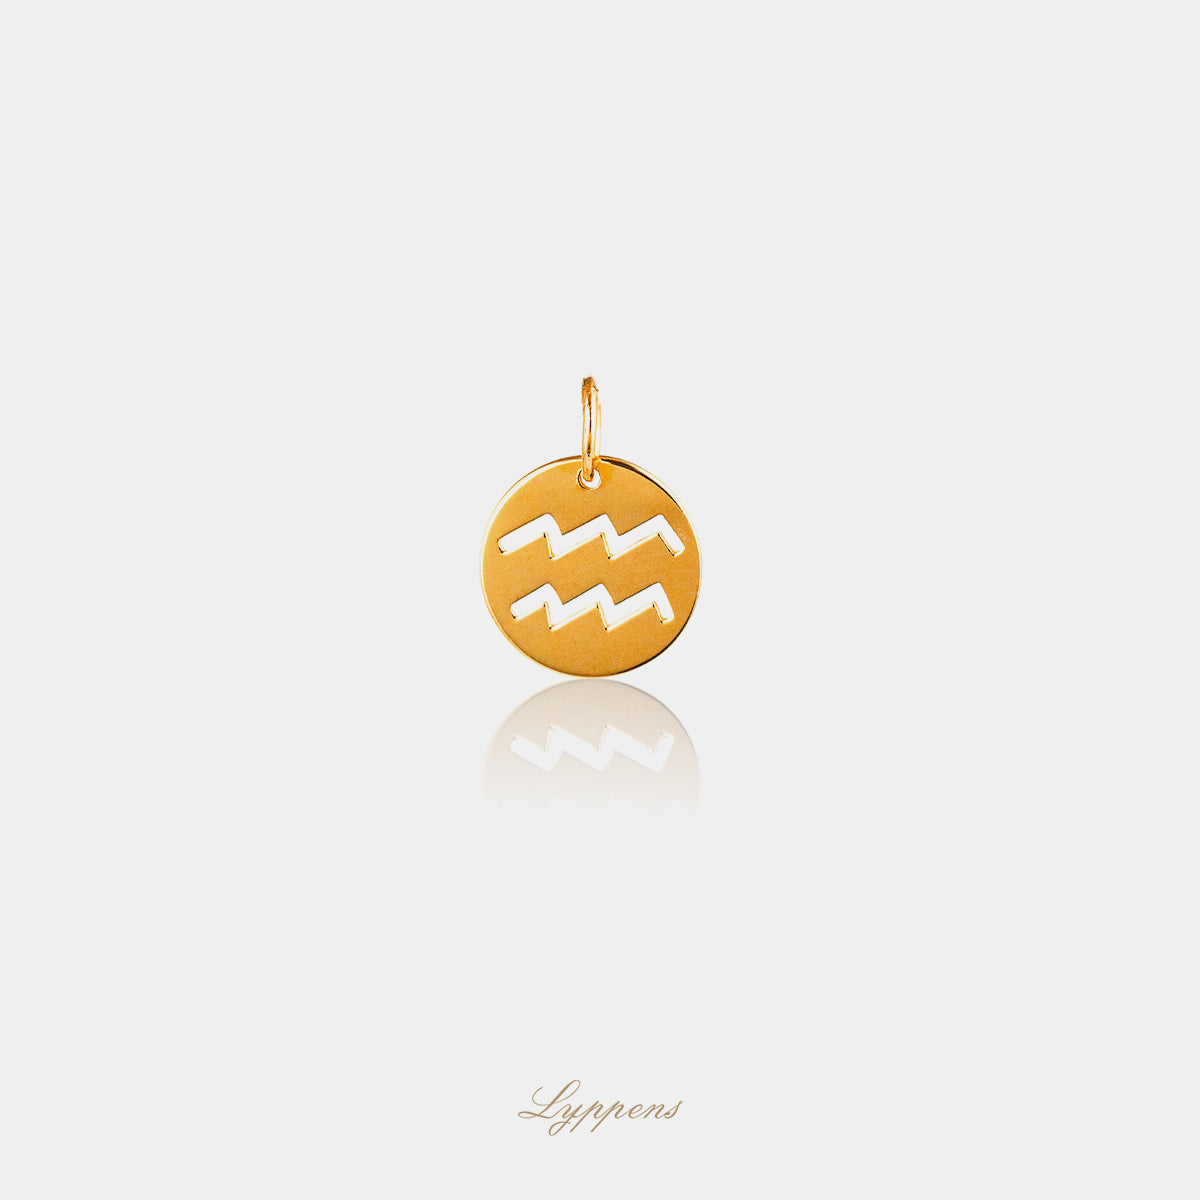 Yellow gold pendant "Aquarius" constellation